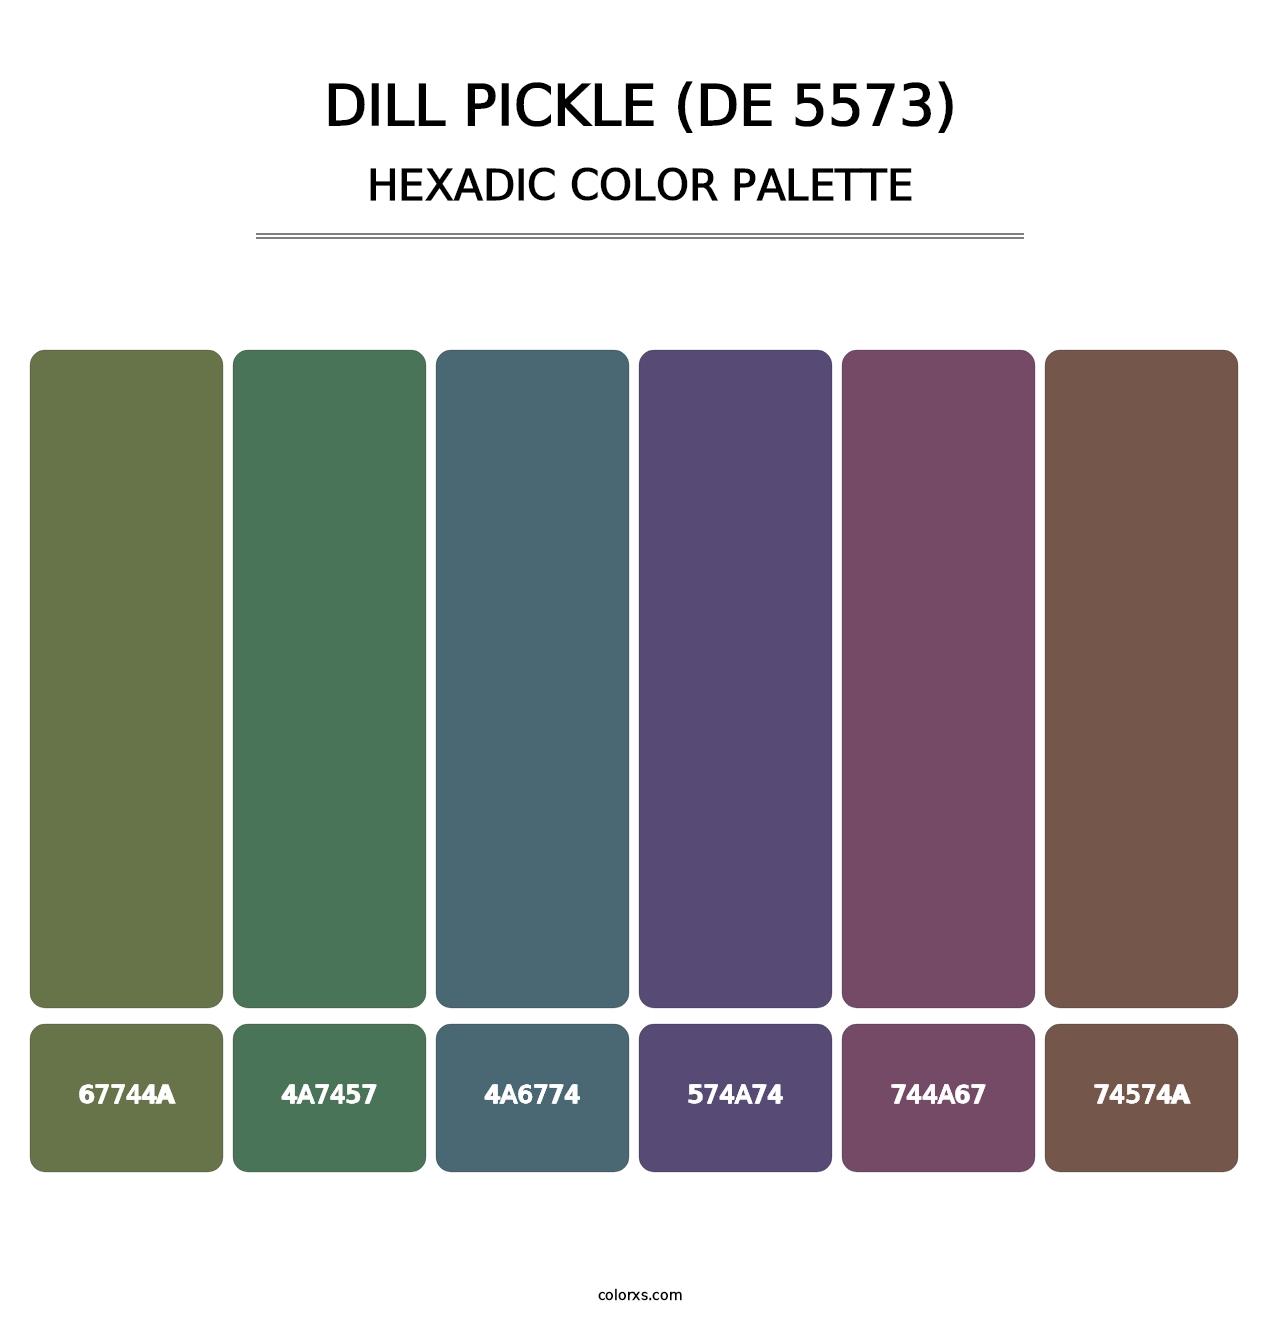 Dill Pickle (DE 5573) - Hexadic Color Palette